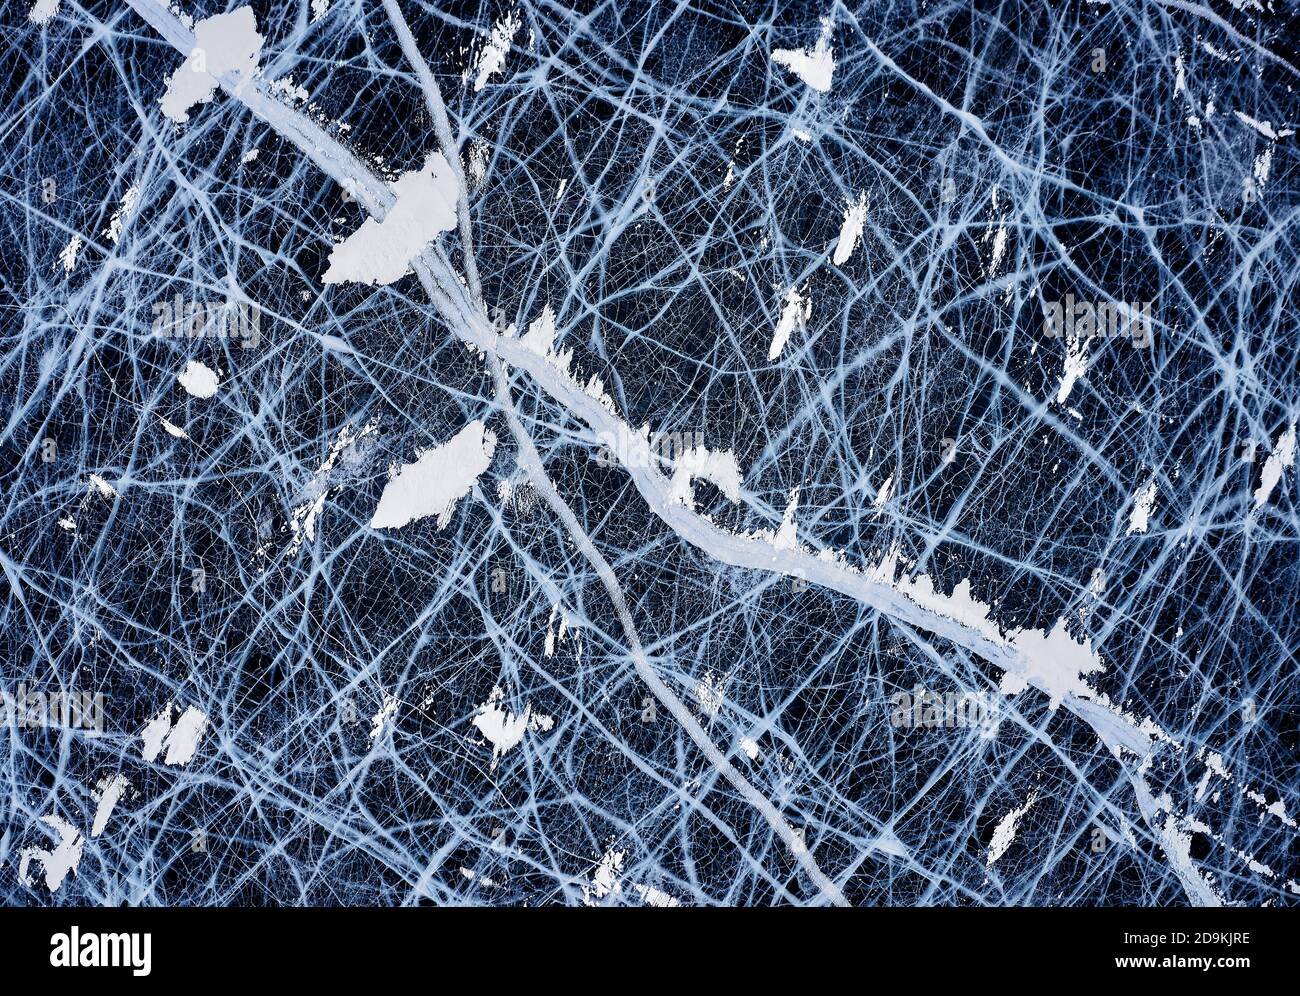 Glace bleu foncé - vue aérienne. Esthétique de glace. Lac gelé. Texture de glace propre à l'eau. Vue de magnifiques dessins sur la glace, lac Baikal en hiver Banque D'Images